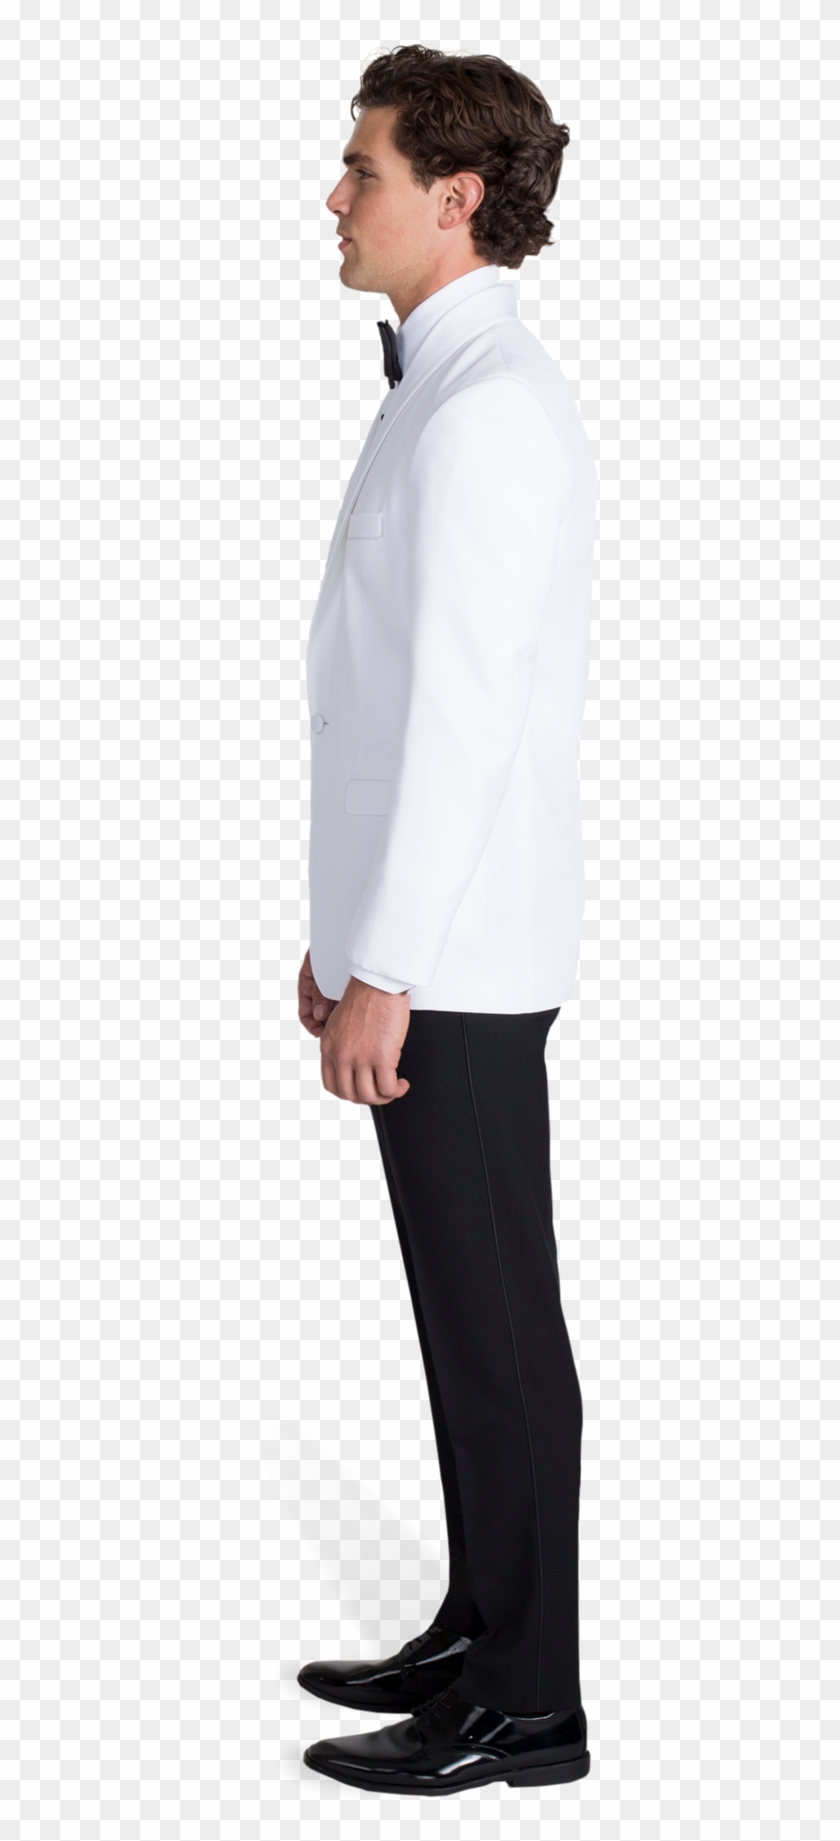 White Tuxedo Dinner Jacket - Tuxedo Suit Side View Clipart #3838156